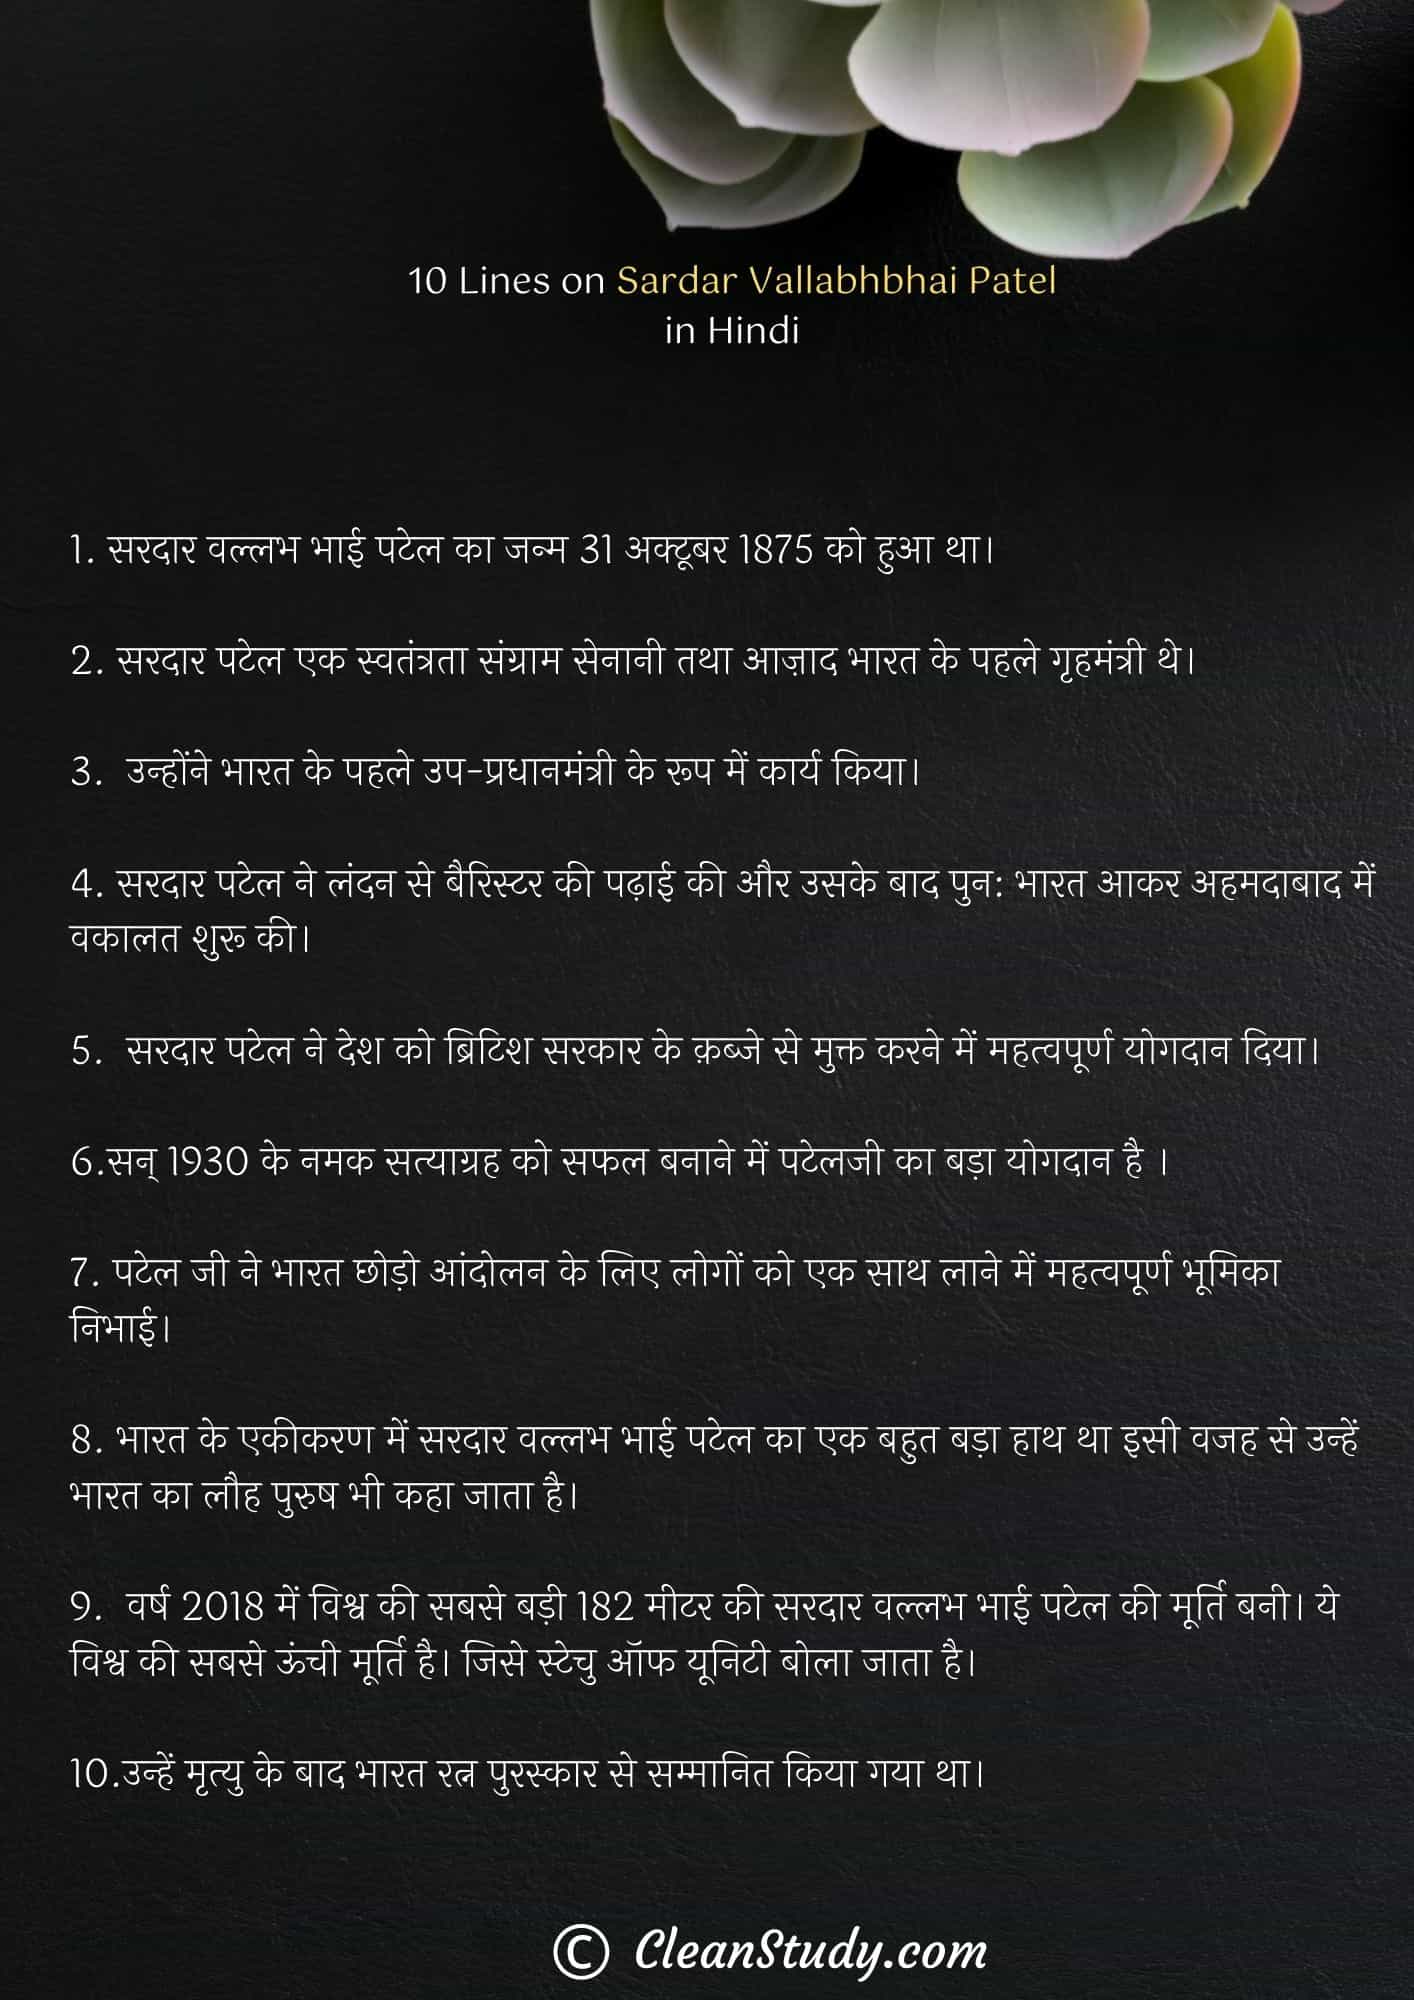 10 Lines on Sardar Vallabhbhai Patel in Hindi